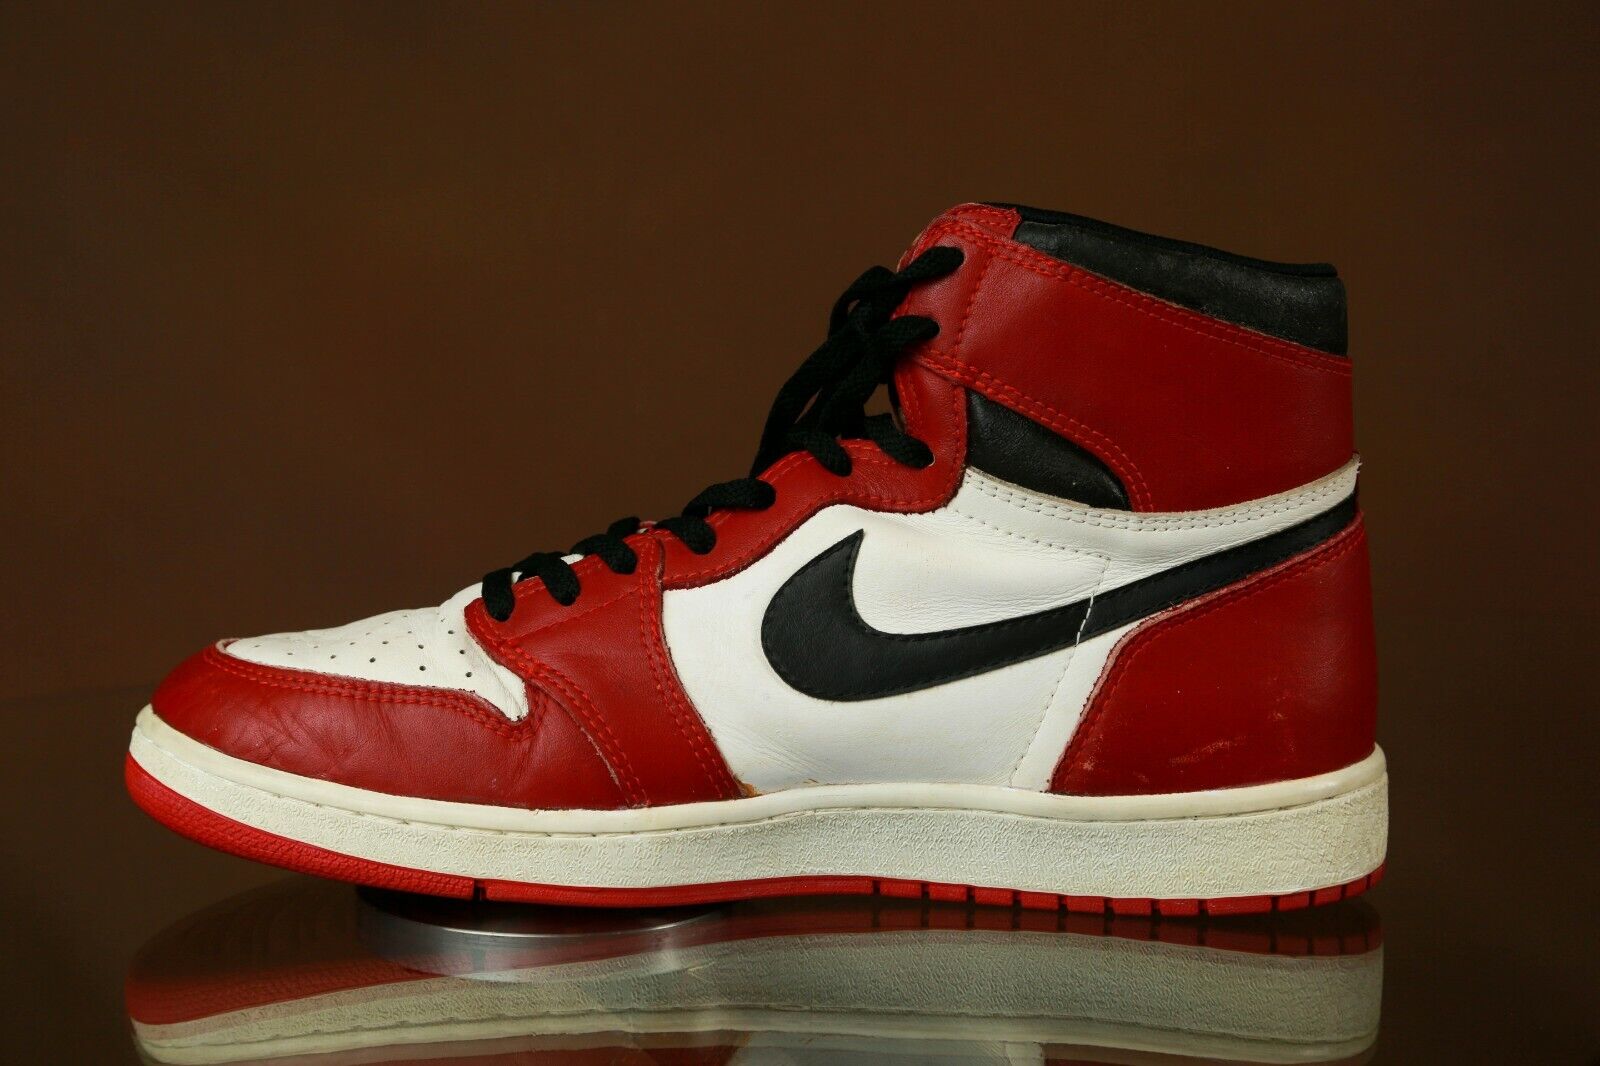 Game-worn Nike Air Jordan 1 Sneakers Michael Jordan Signed 1985